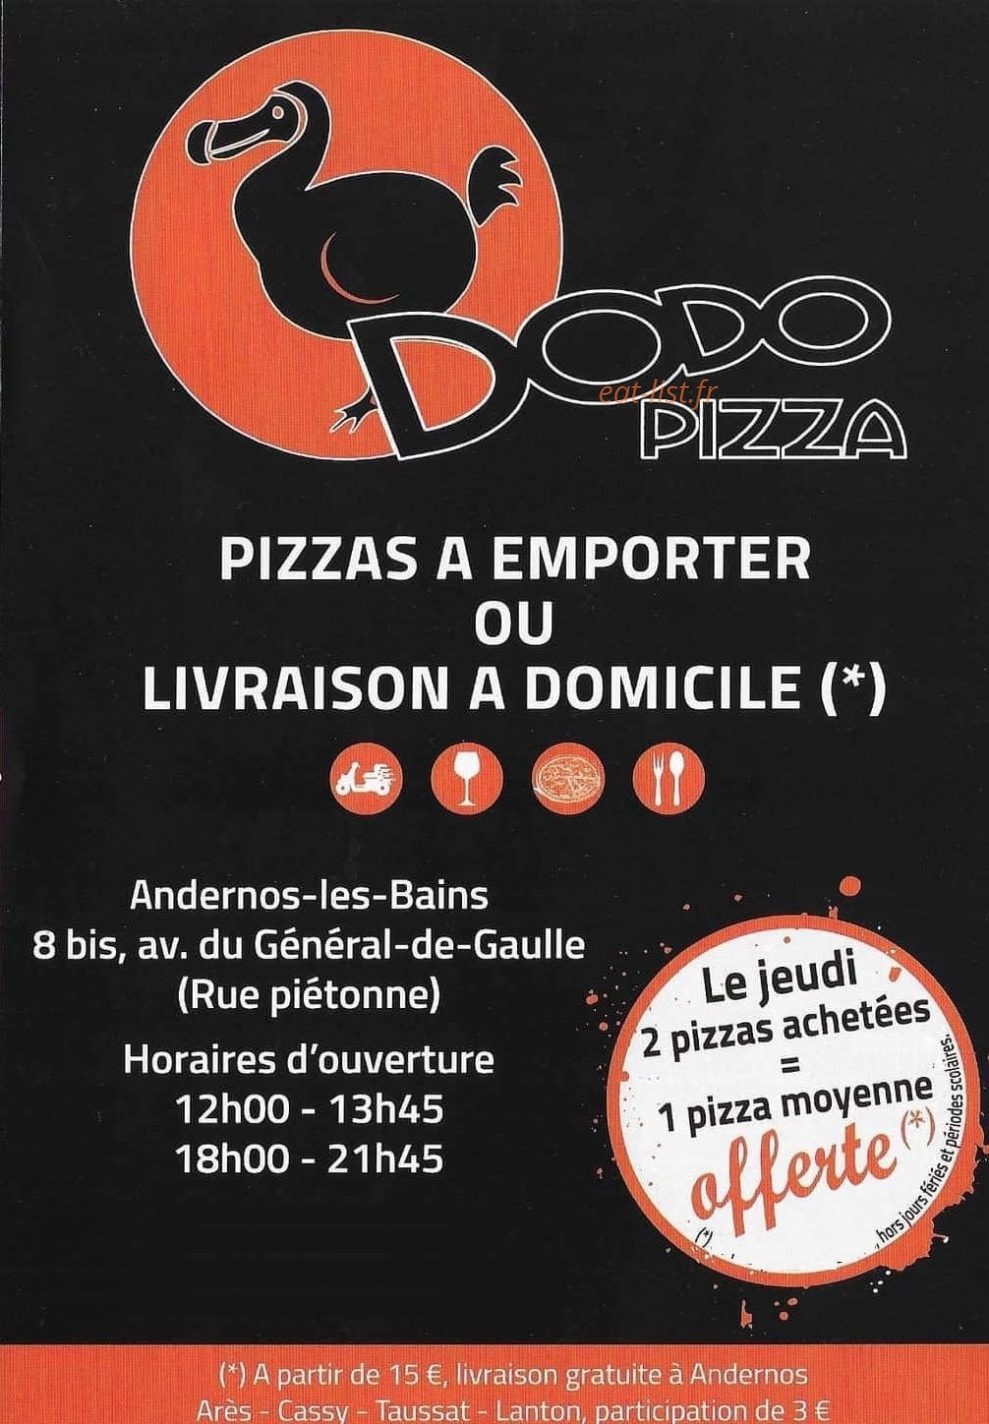 dodo pizza menu